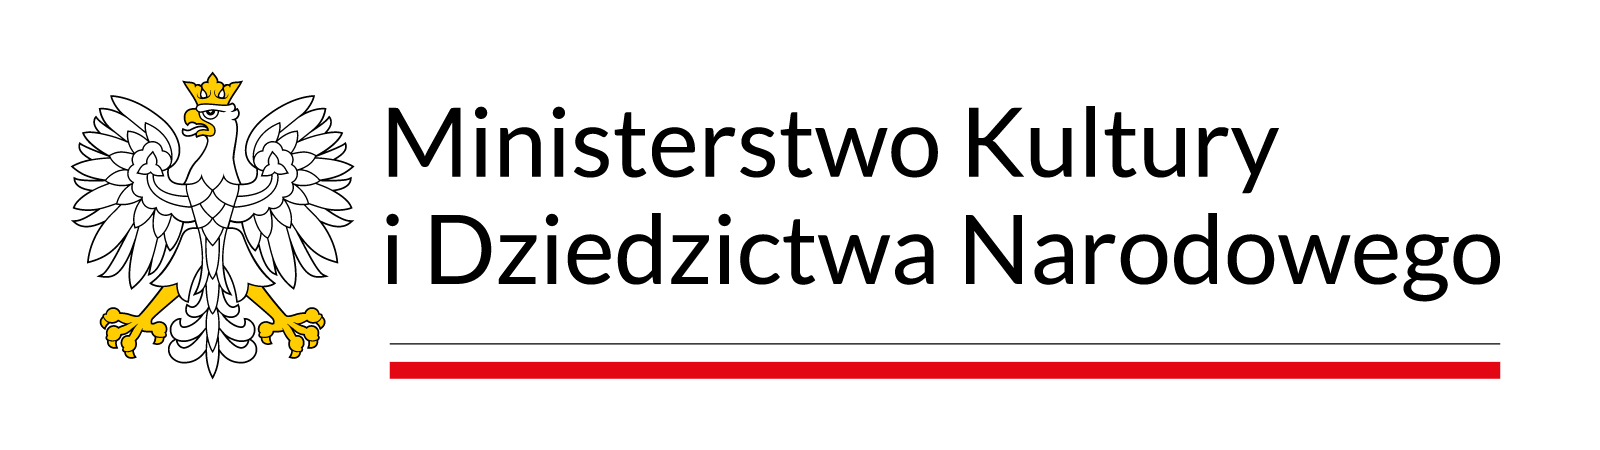 Logo: (Polski) Ministerstwo Kultury i Dziedzictwa Narodowego